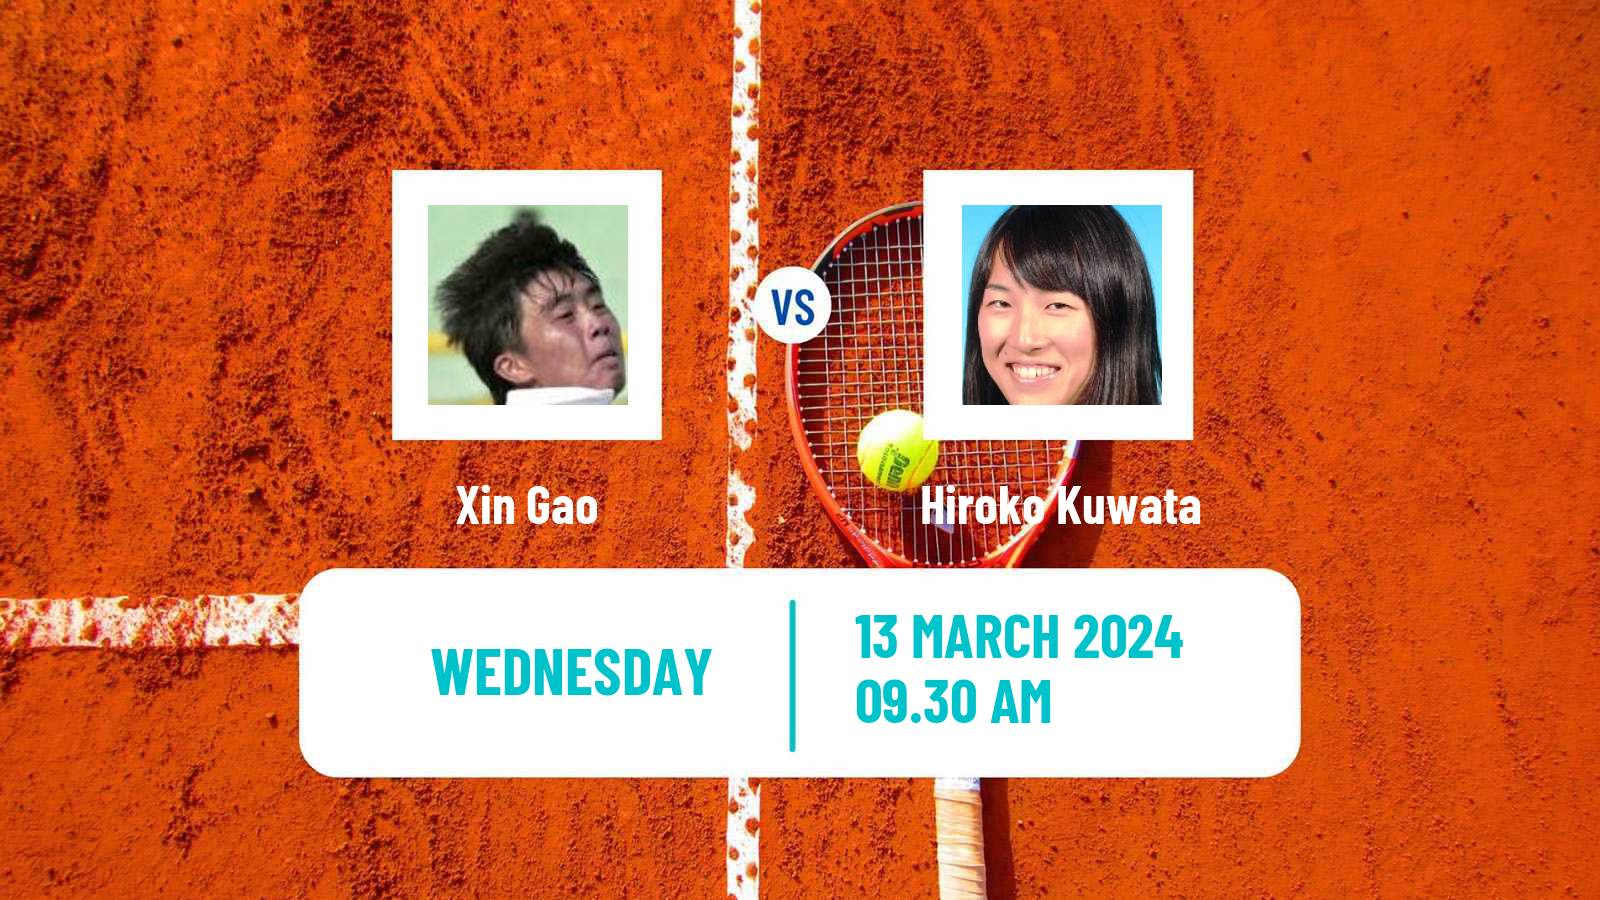 Tennis ITF W35 Santo Domingo 2 Women Xin Gao - Hiroko Kuwata